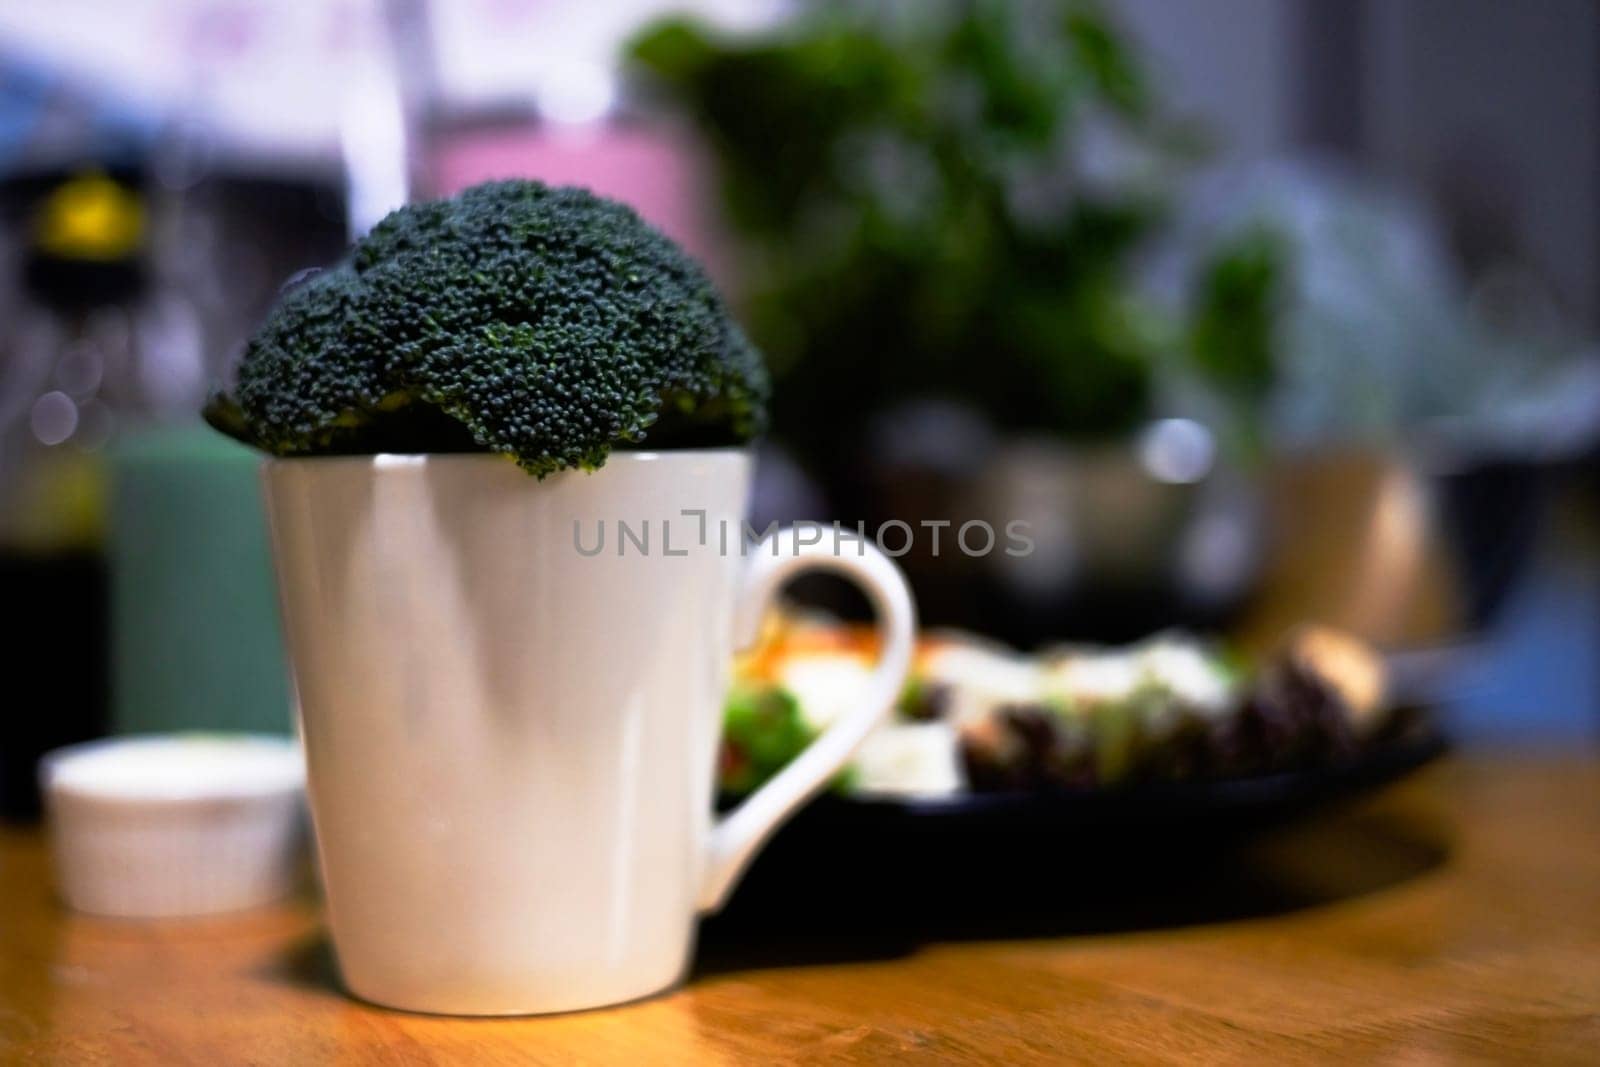 Fresh broccoli in a ceramic mug on blur background.